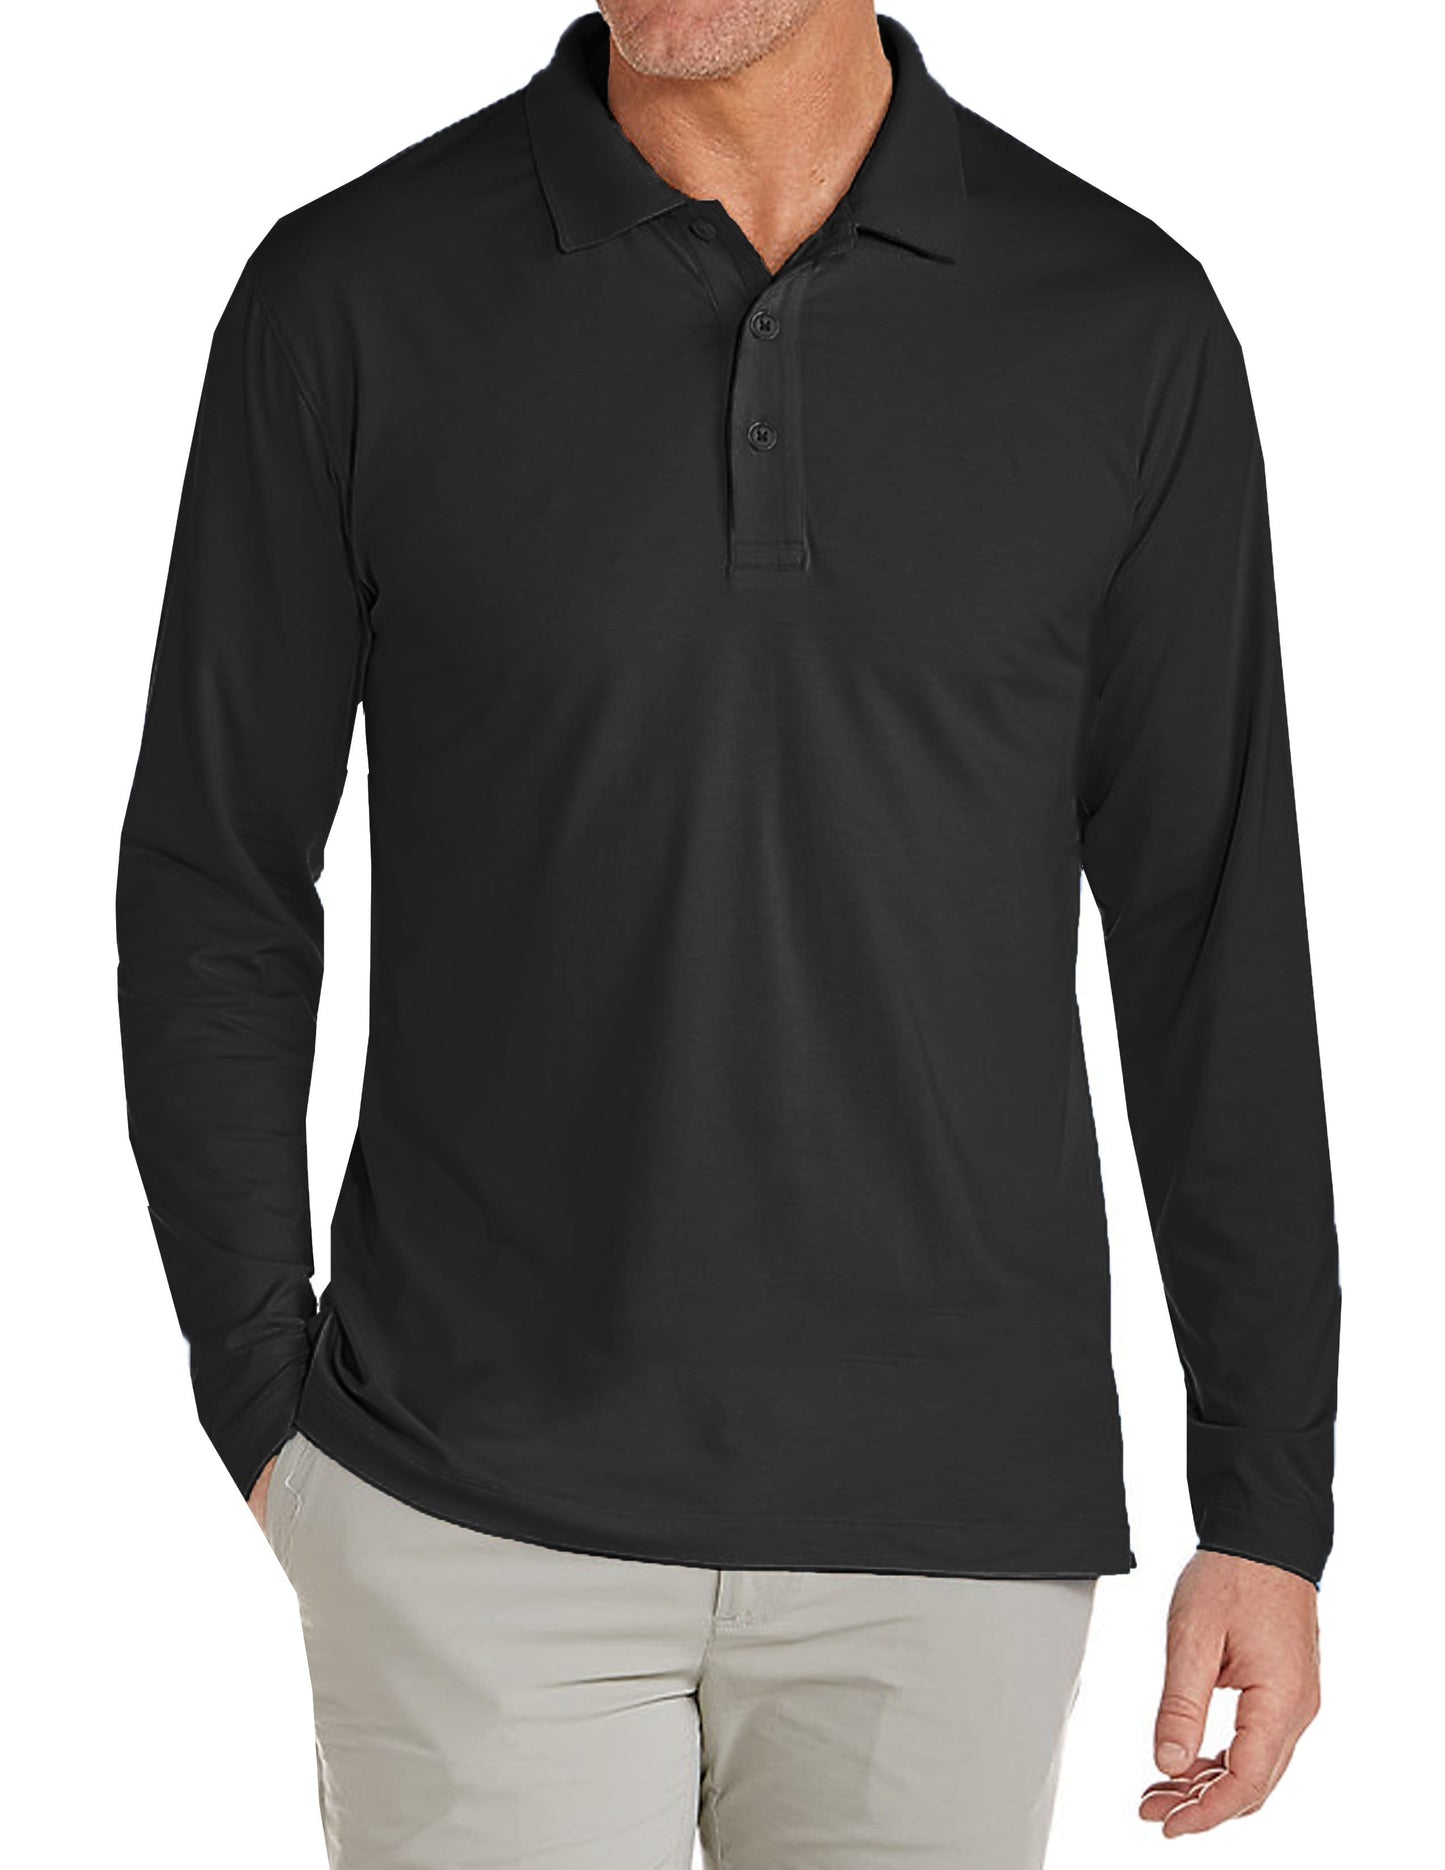 Men's Long Sleeve Pique Polo Shirt - GalaxybyHarvic